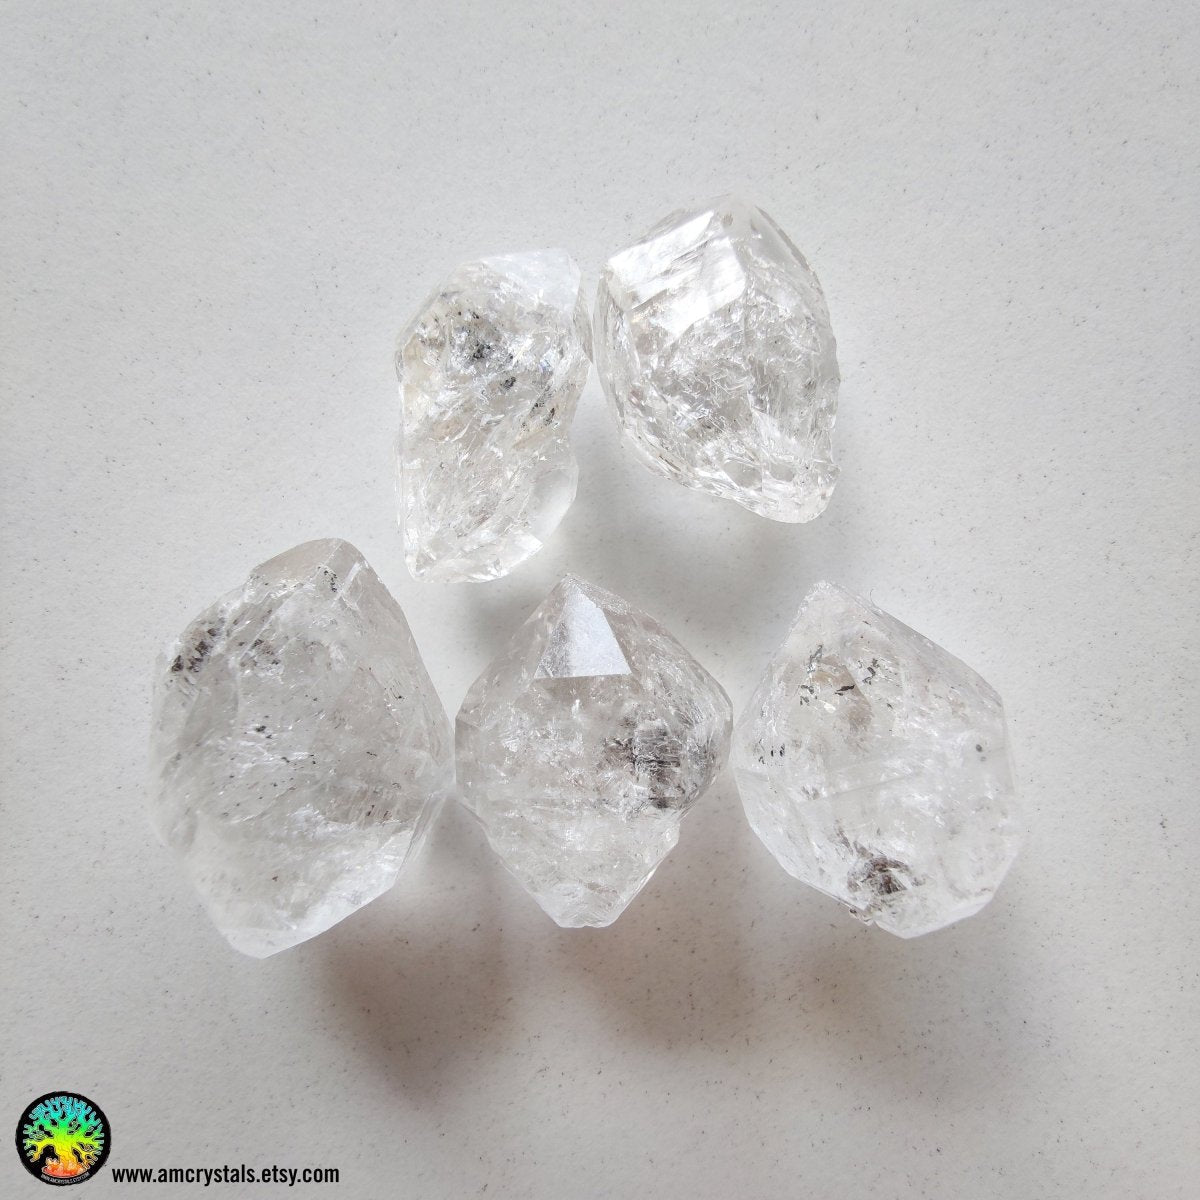 Double Terminated Diamond Quartz Crystals Lot C - Anima Mundi Crystals